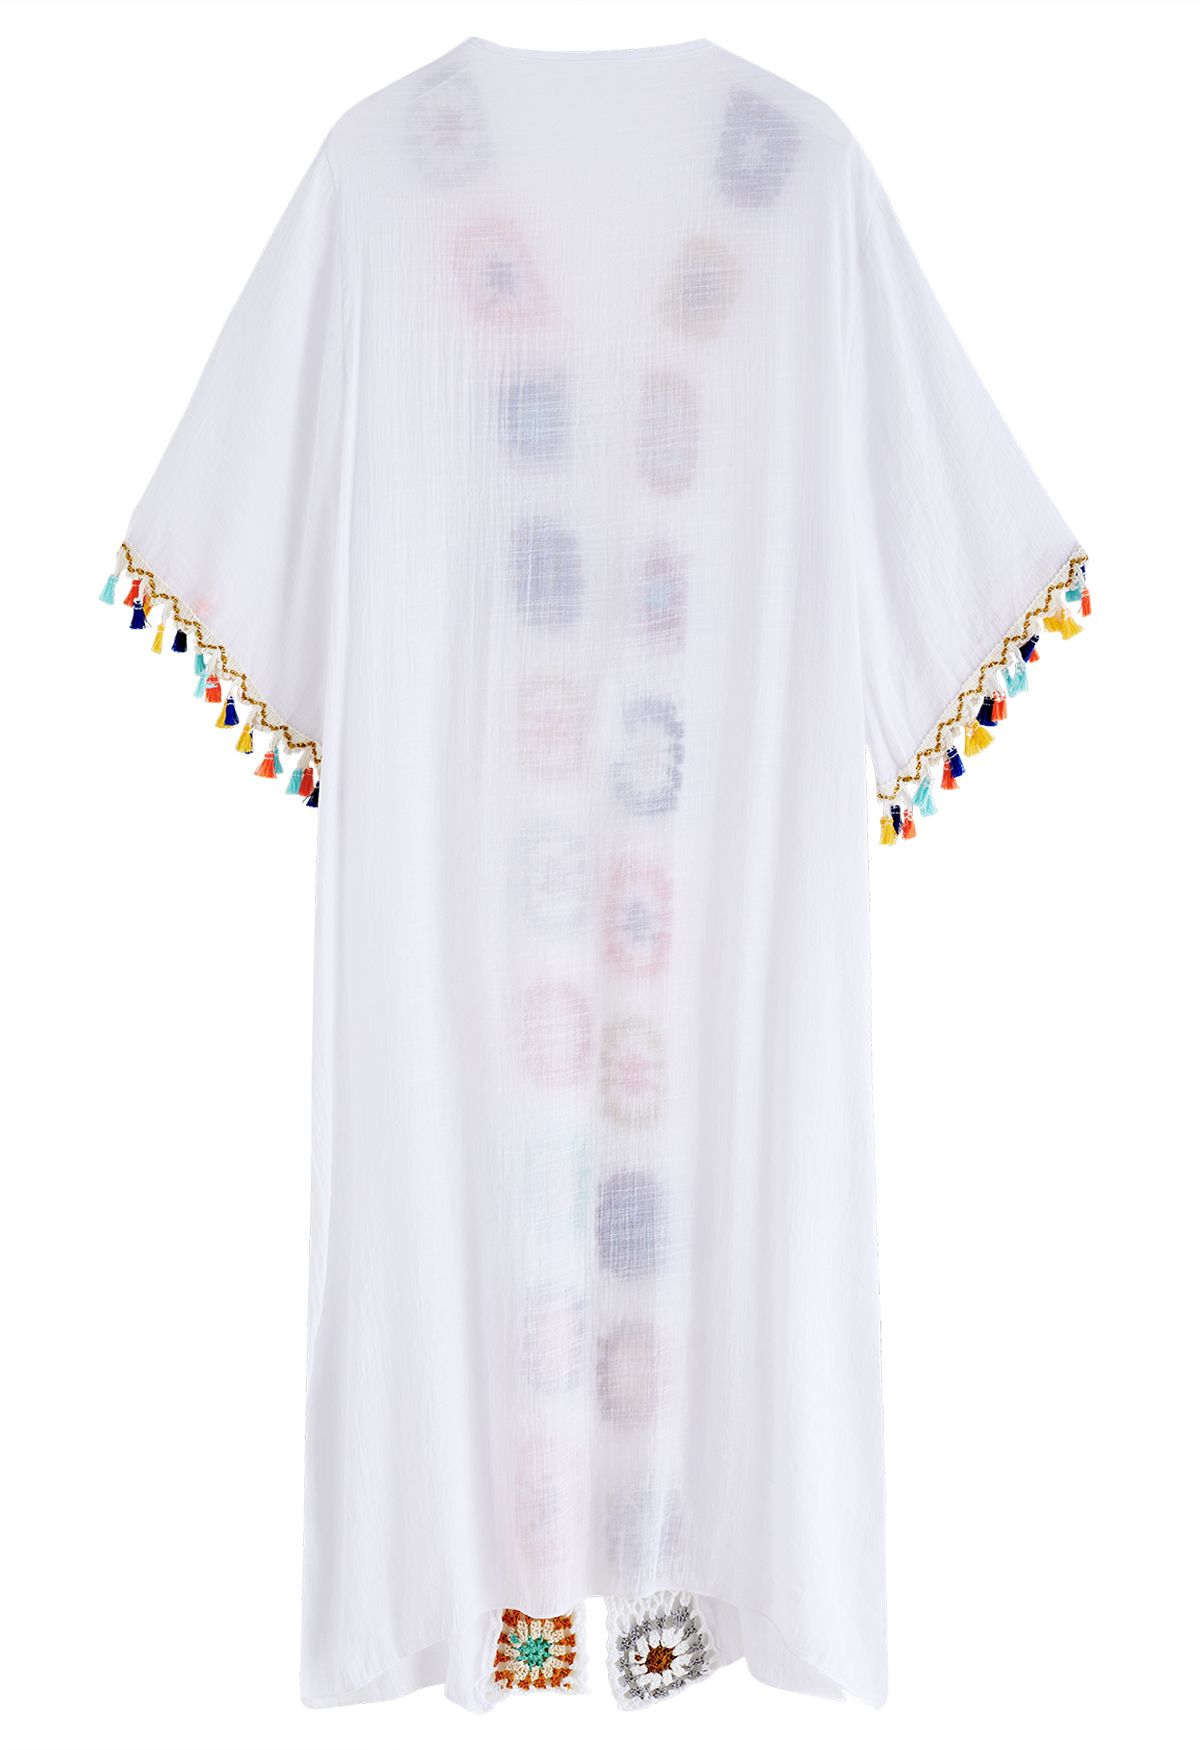 Bunter gehäkelter Quasten-Kimono in Weiß